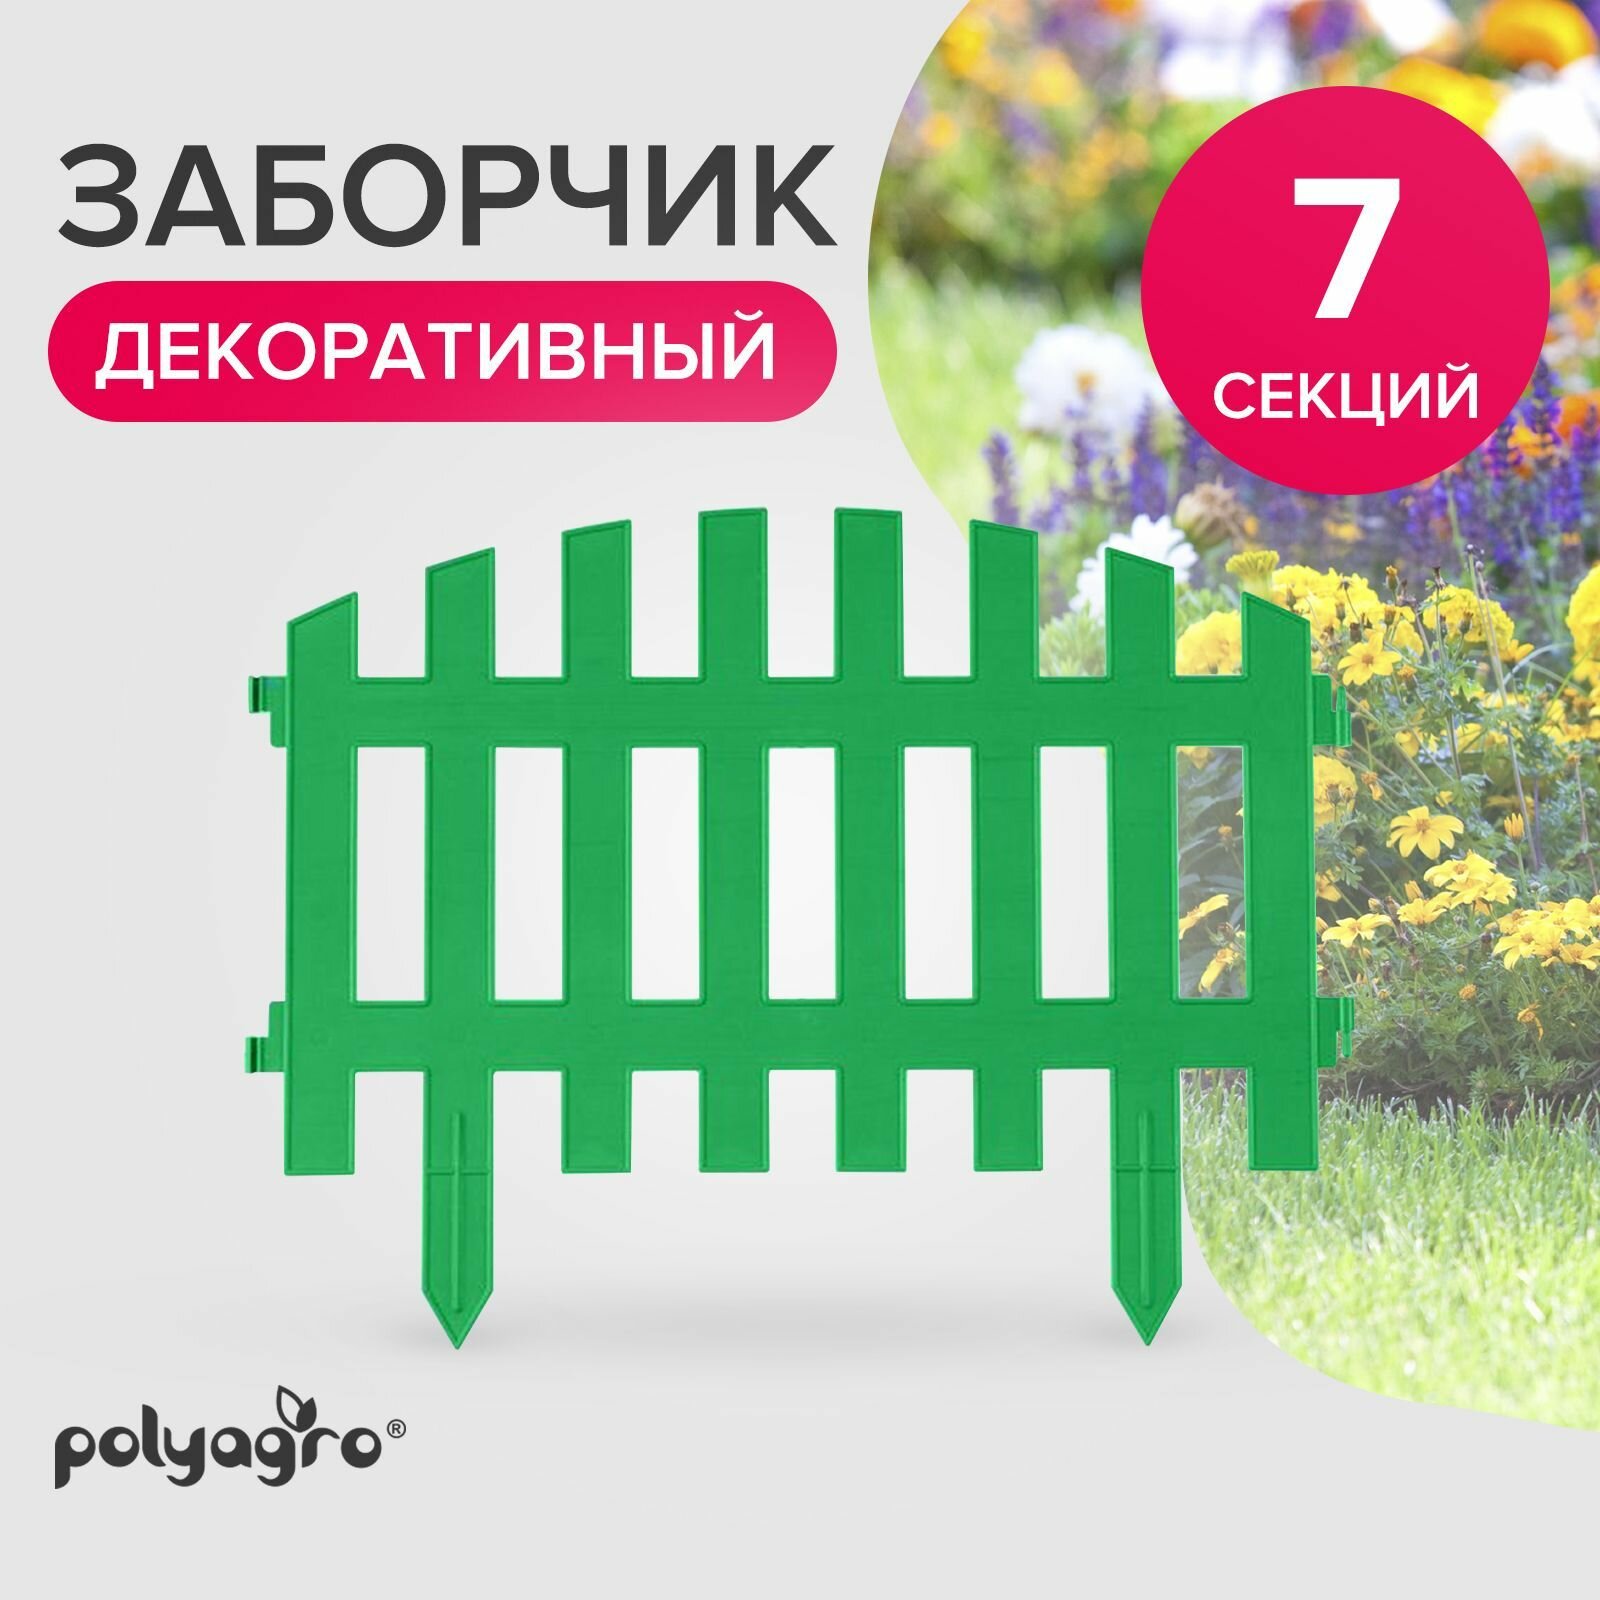 Заборчик декоративный для сада 31 м (высота 35 см) бордюр садовый Polyagro зеленый